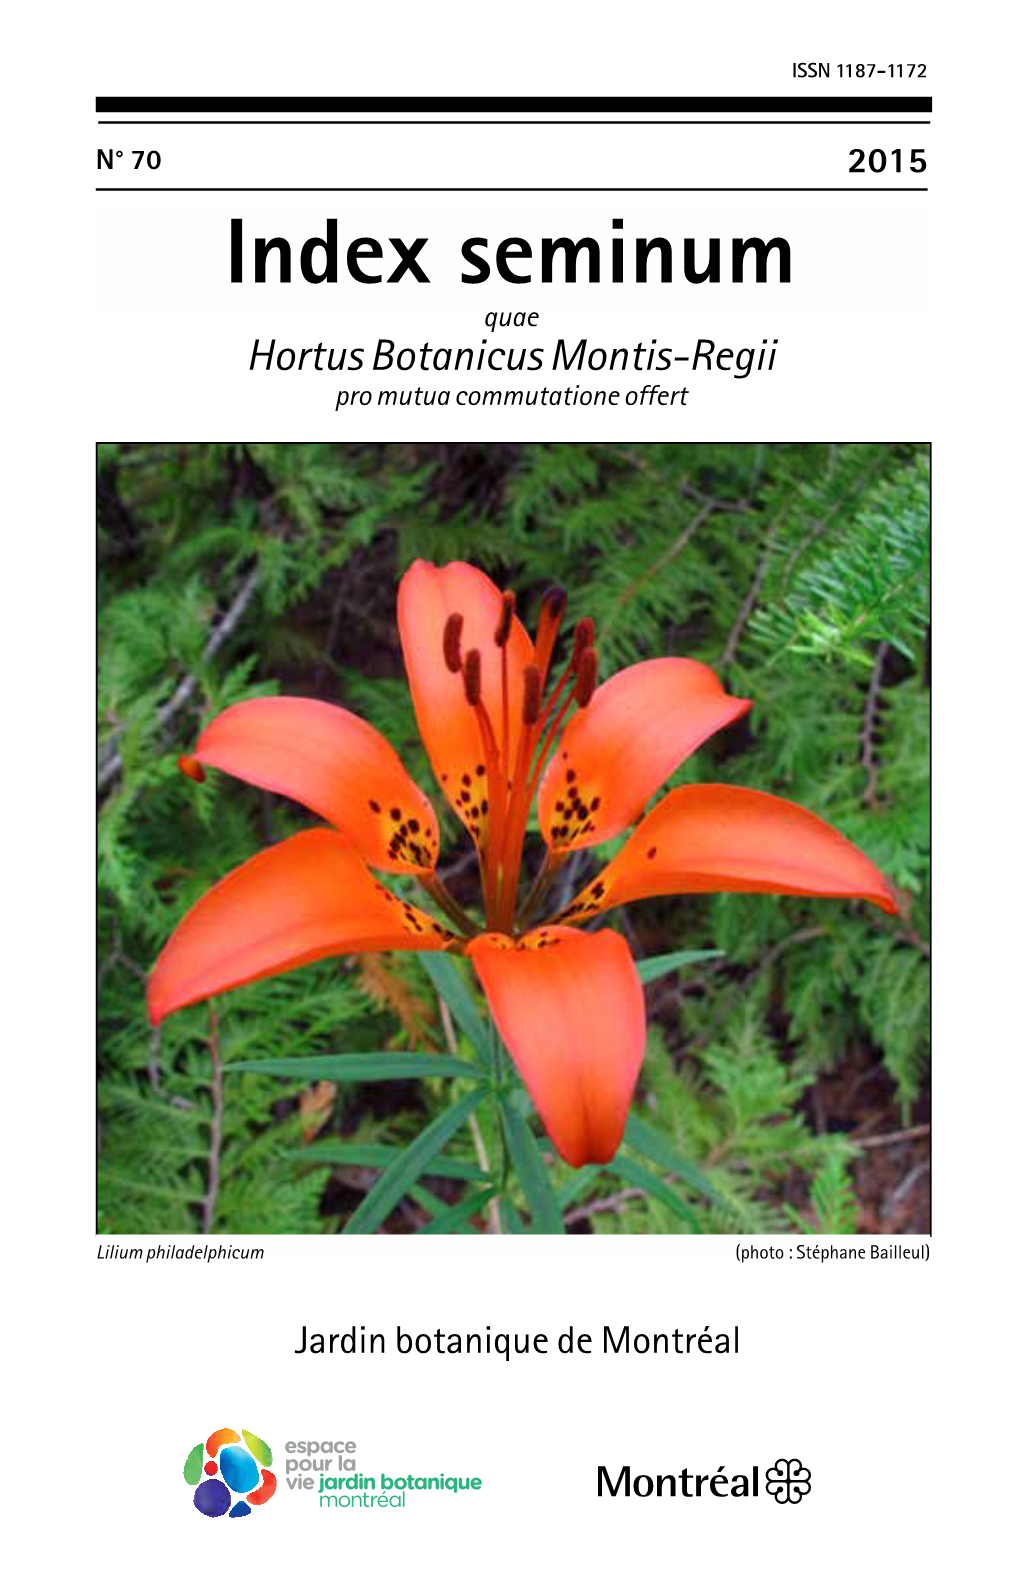 Index Seminum Quae Hortus Botanicus Montis-Regii Pro Mutua Commutatione Offert